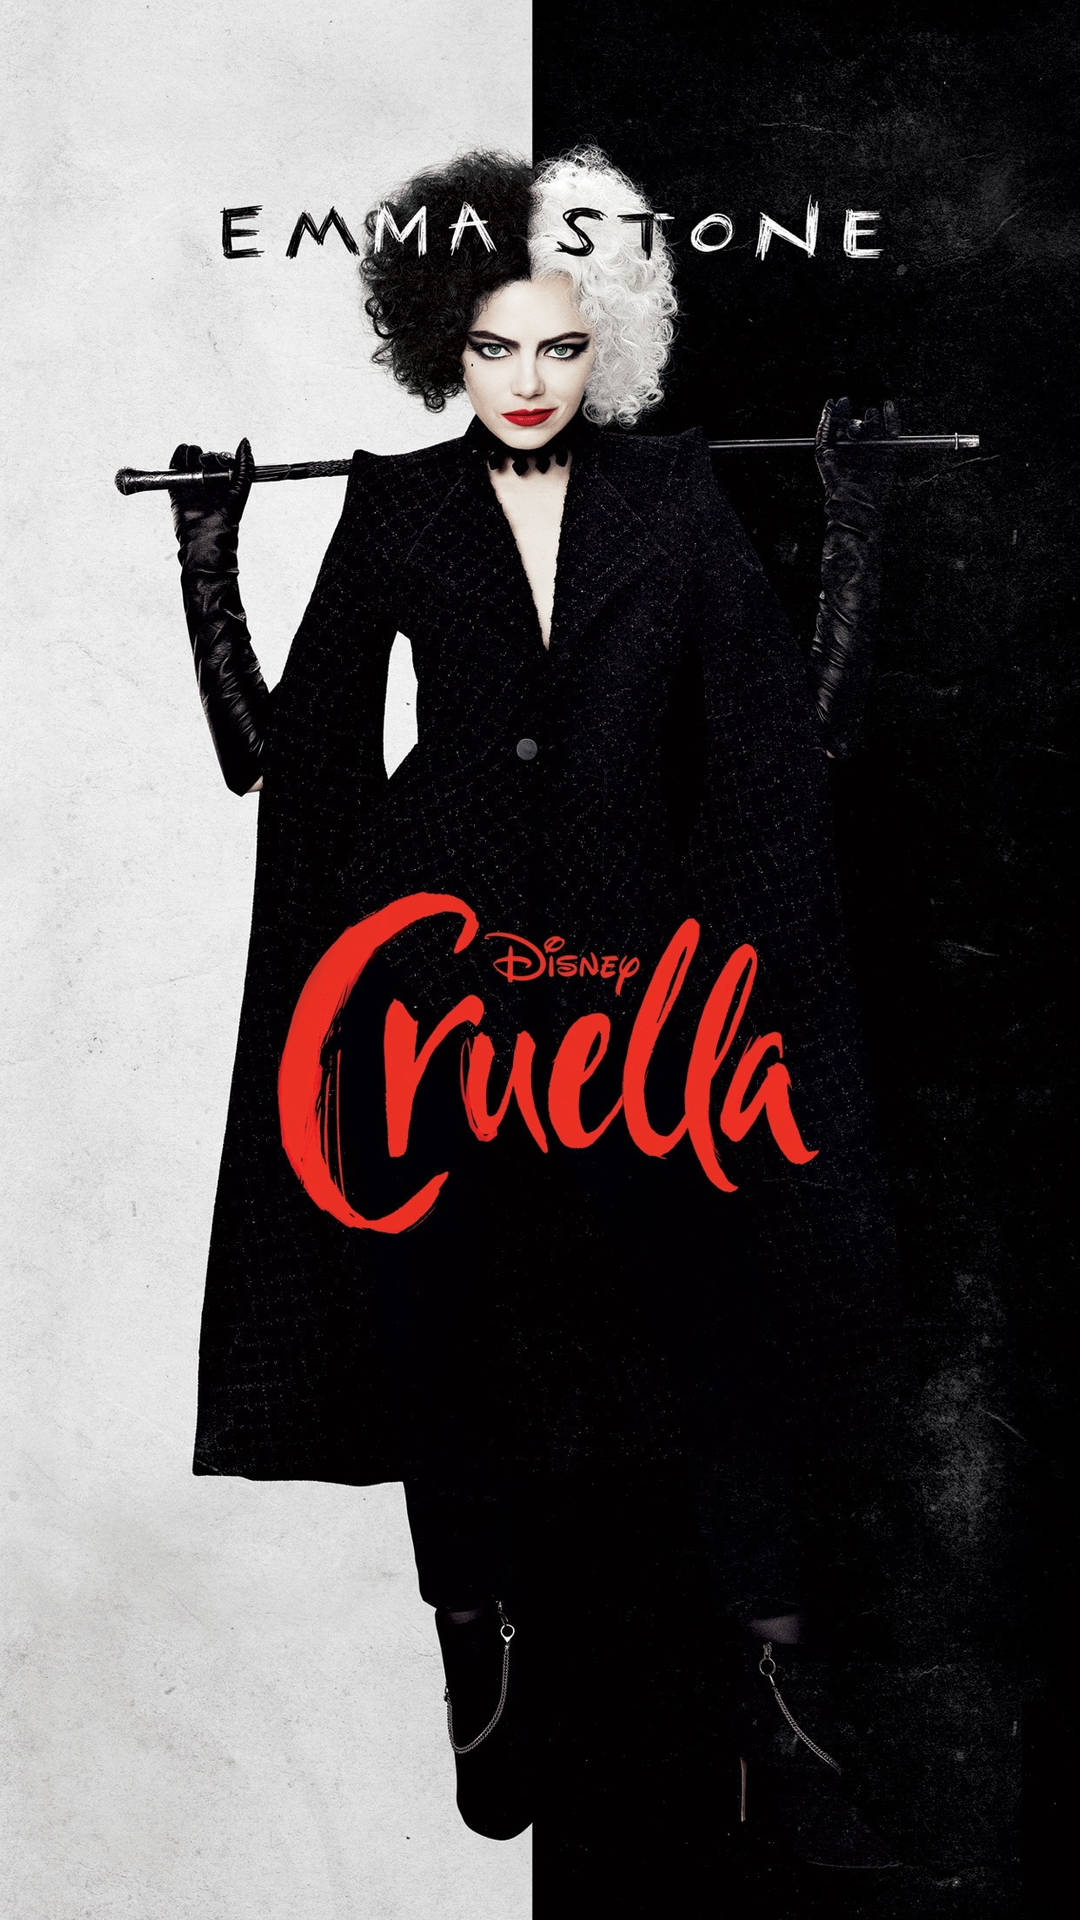 Cruella Emma Stone Movie Poster Background